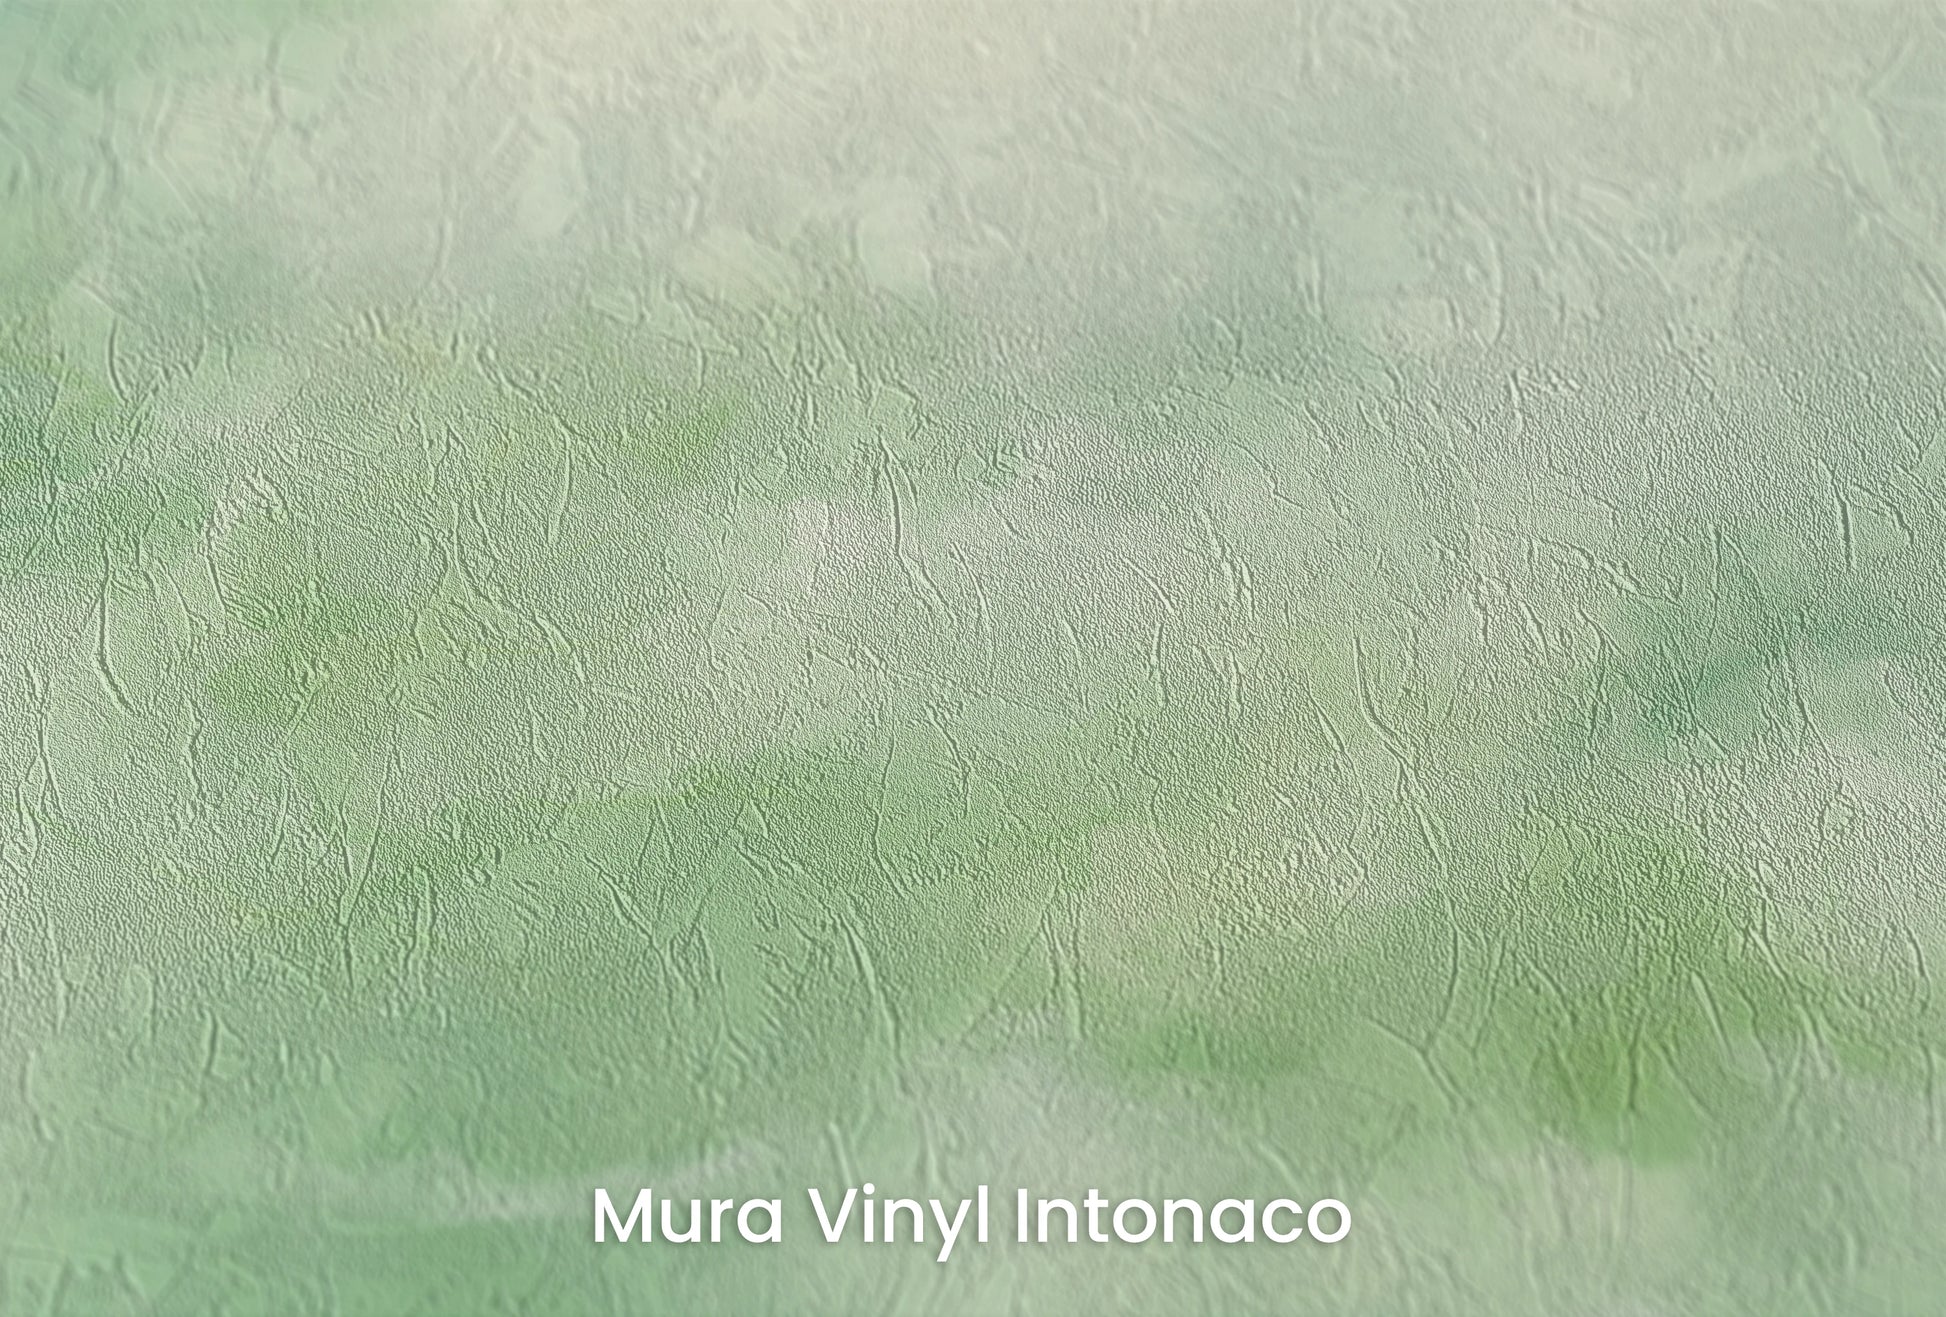 Zbliżenie na artystyczną fototapetę o nazwie Serene Reflection na podłożu Mura Vinyl Intonaco - struktura tartego tynku.